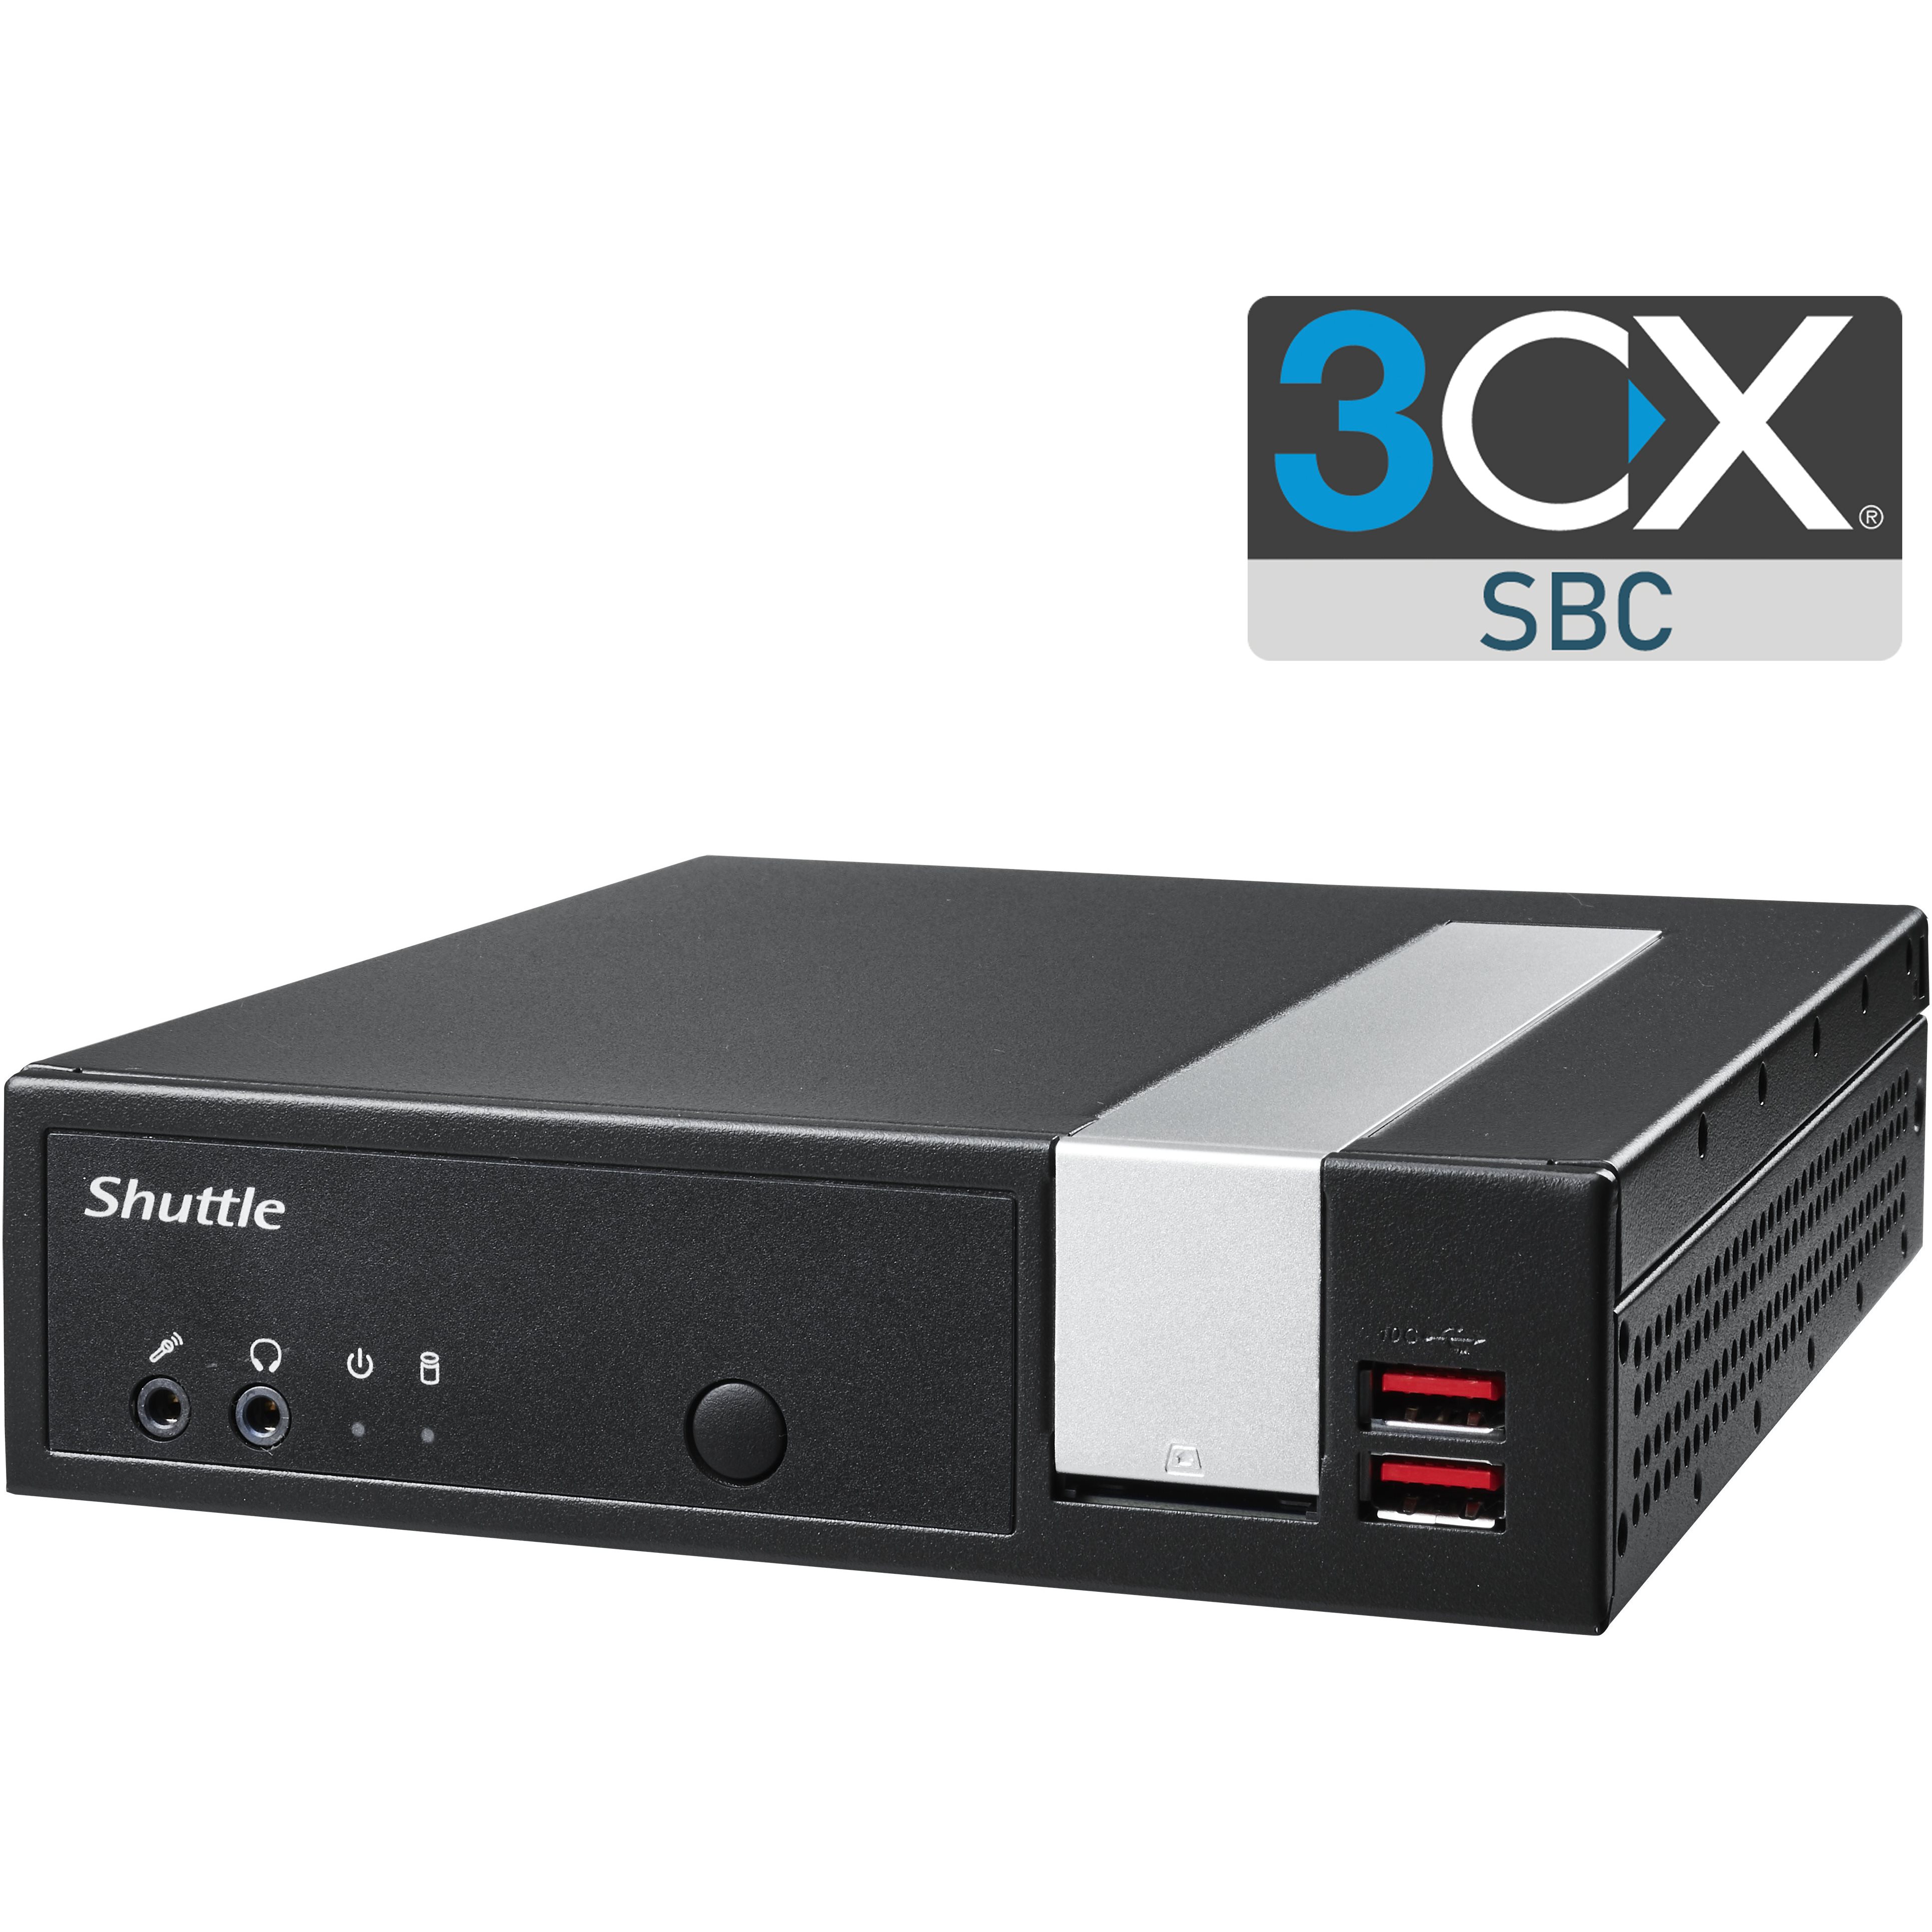 SBC 3CX Desktop pr-install jusqu' 30 devices CX-SERV-SBCV4